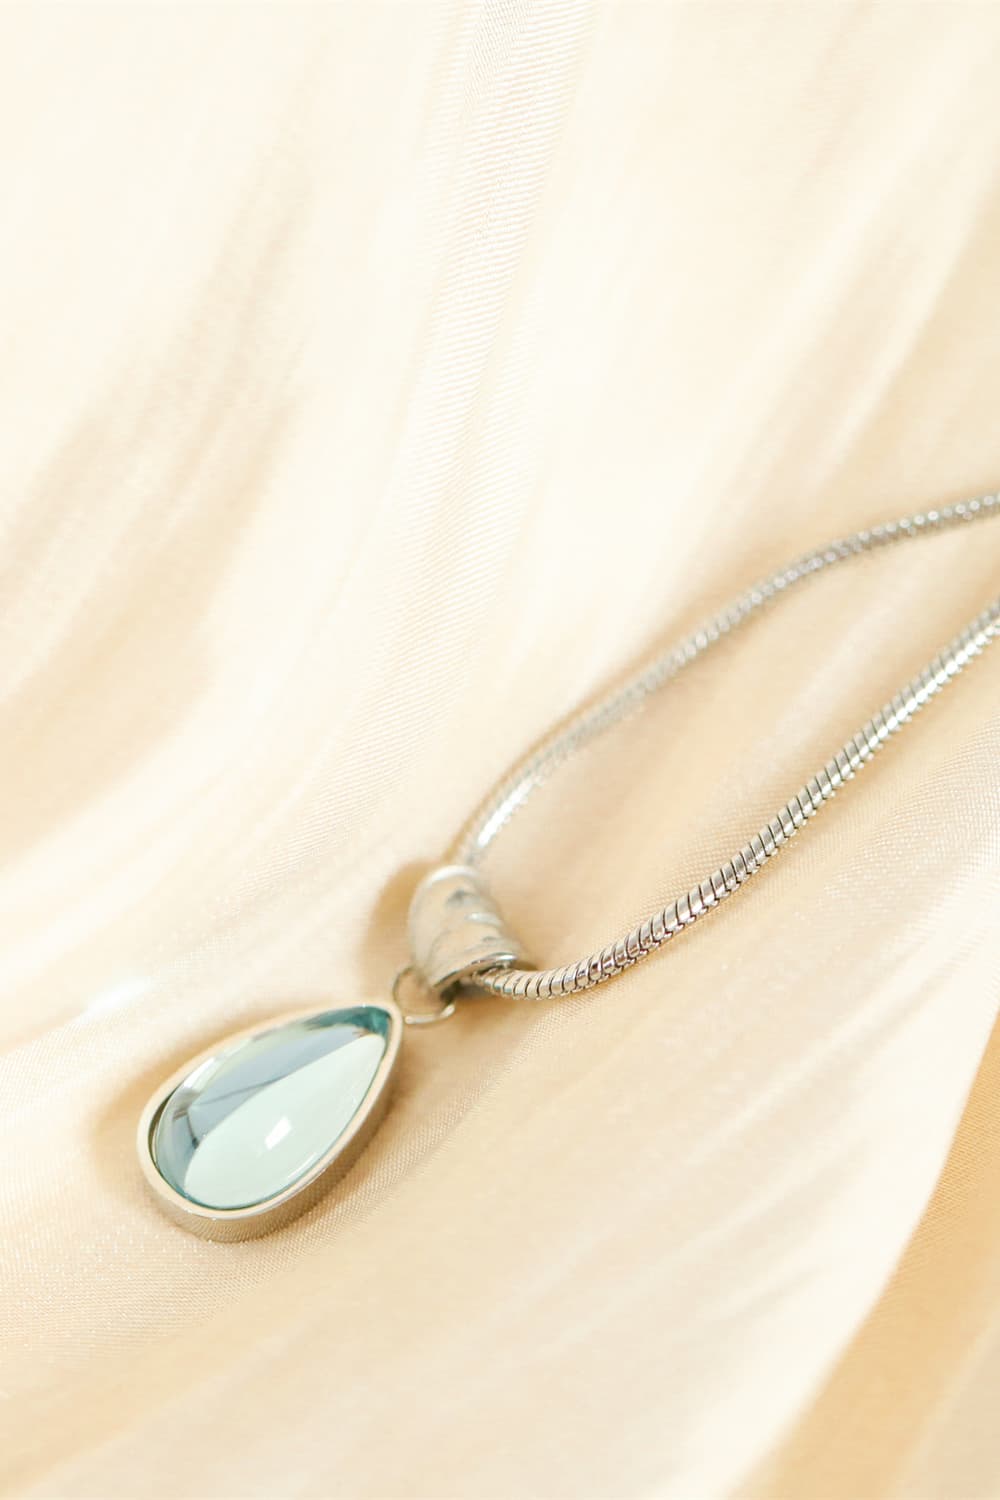 Antique White Teardrop Shape Titanium Steel Pendant Necklace Sentient Beauty Fashions jewelry